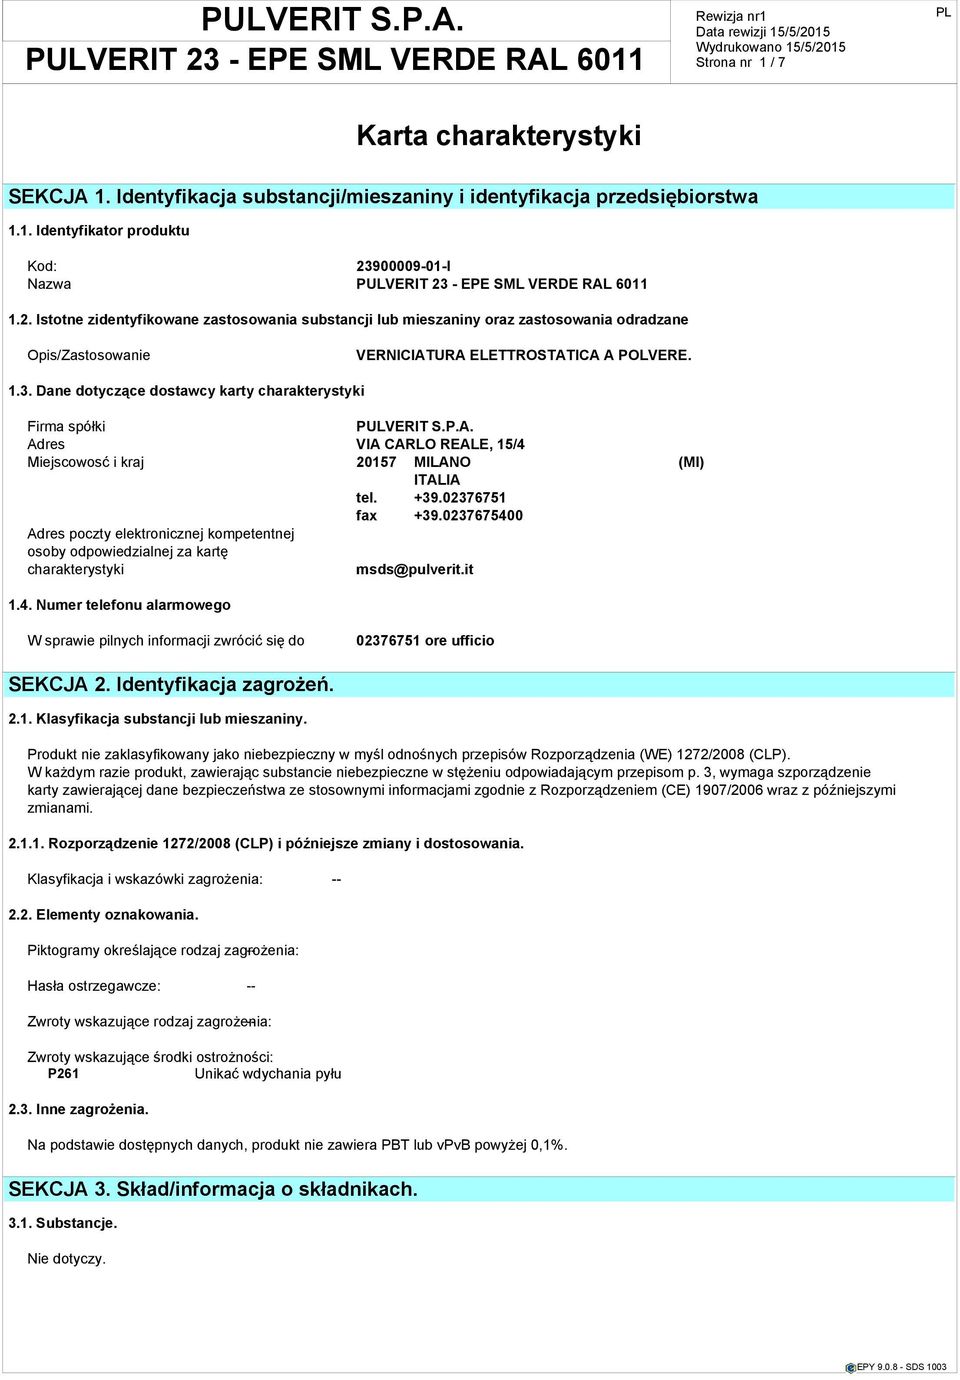 Dane dotyczące dostawcy karty charakterystyki Firma spółki PULVERIT S.P.A. Adres VIA CARLO REALE, 15/4 Miejscowosć i kraj 20157 MILANO (MI) ITALIA tel. +39.02376751 fax +39.